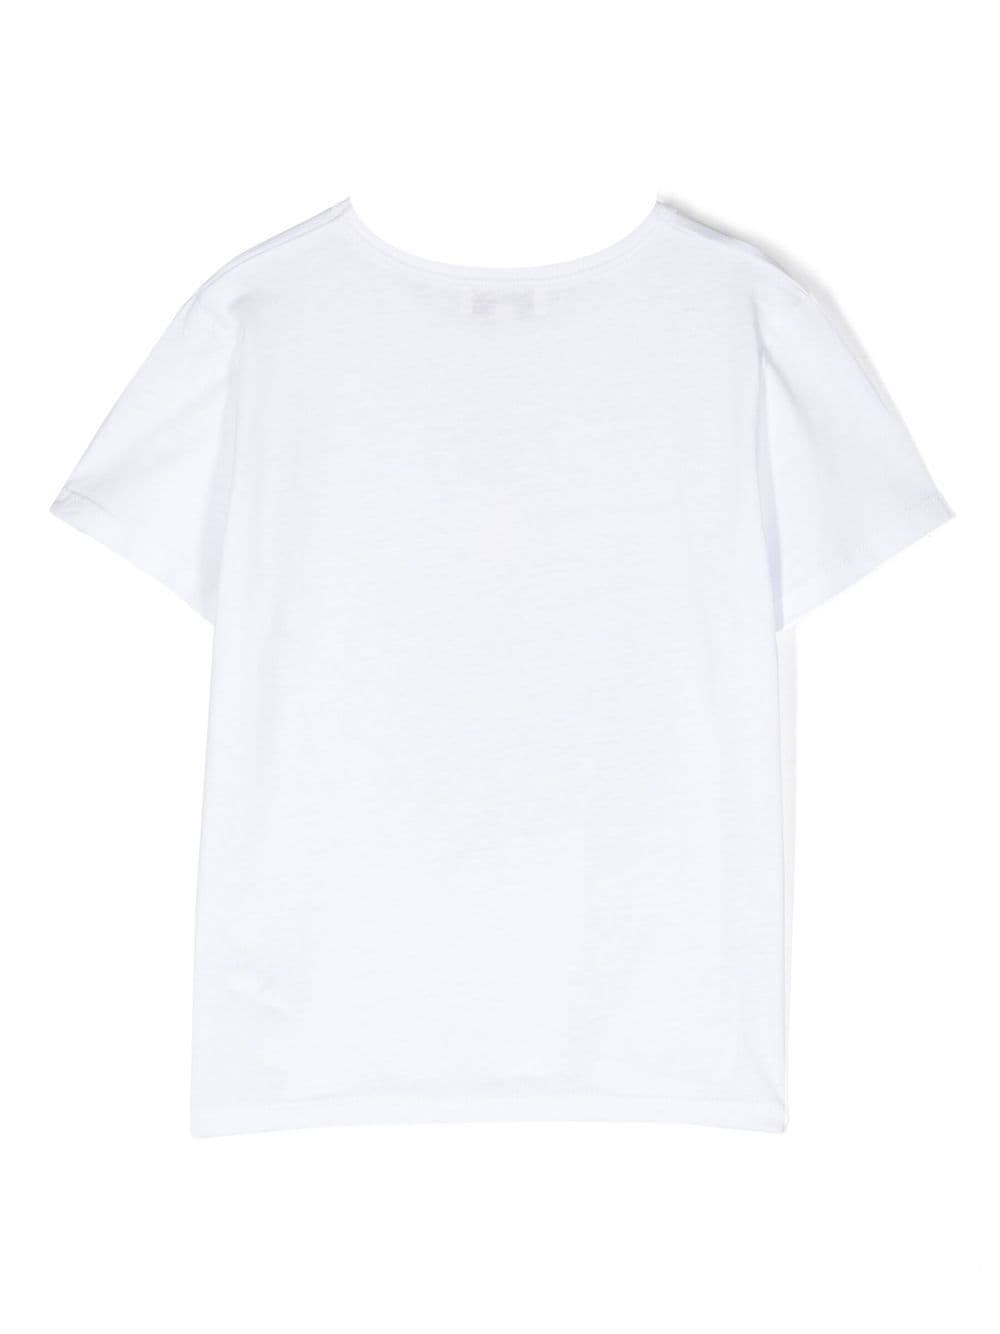 SONIA RYKIEL ENFANT T-shirt met print - Wit